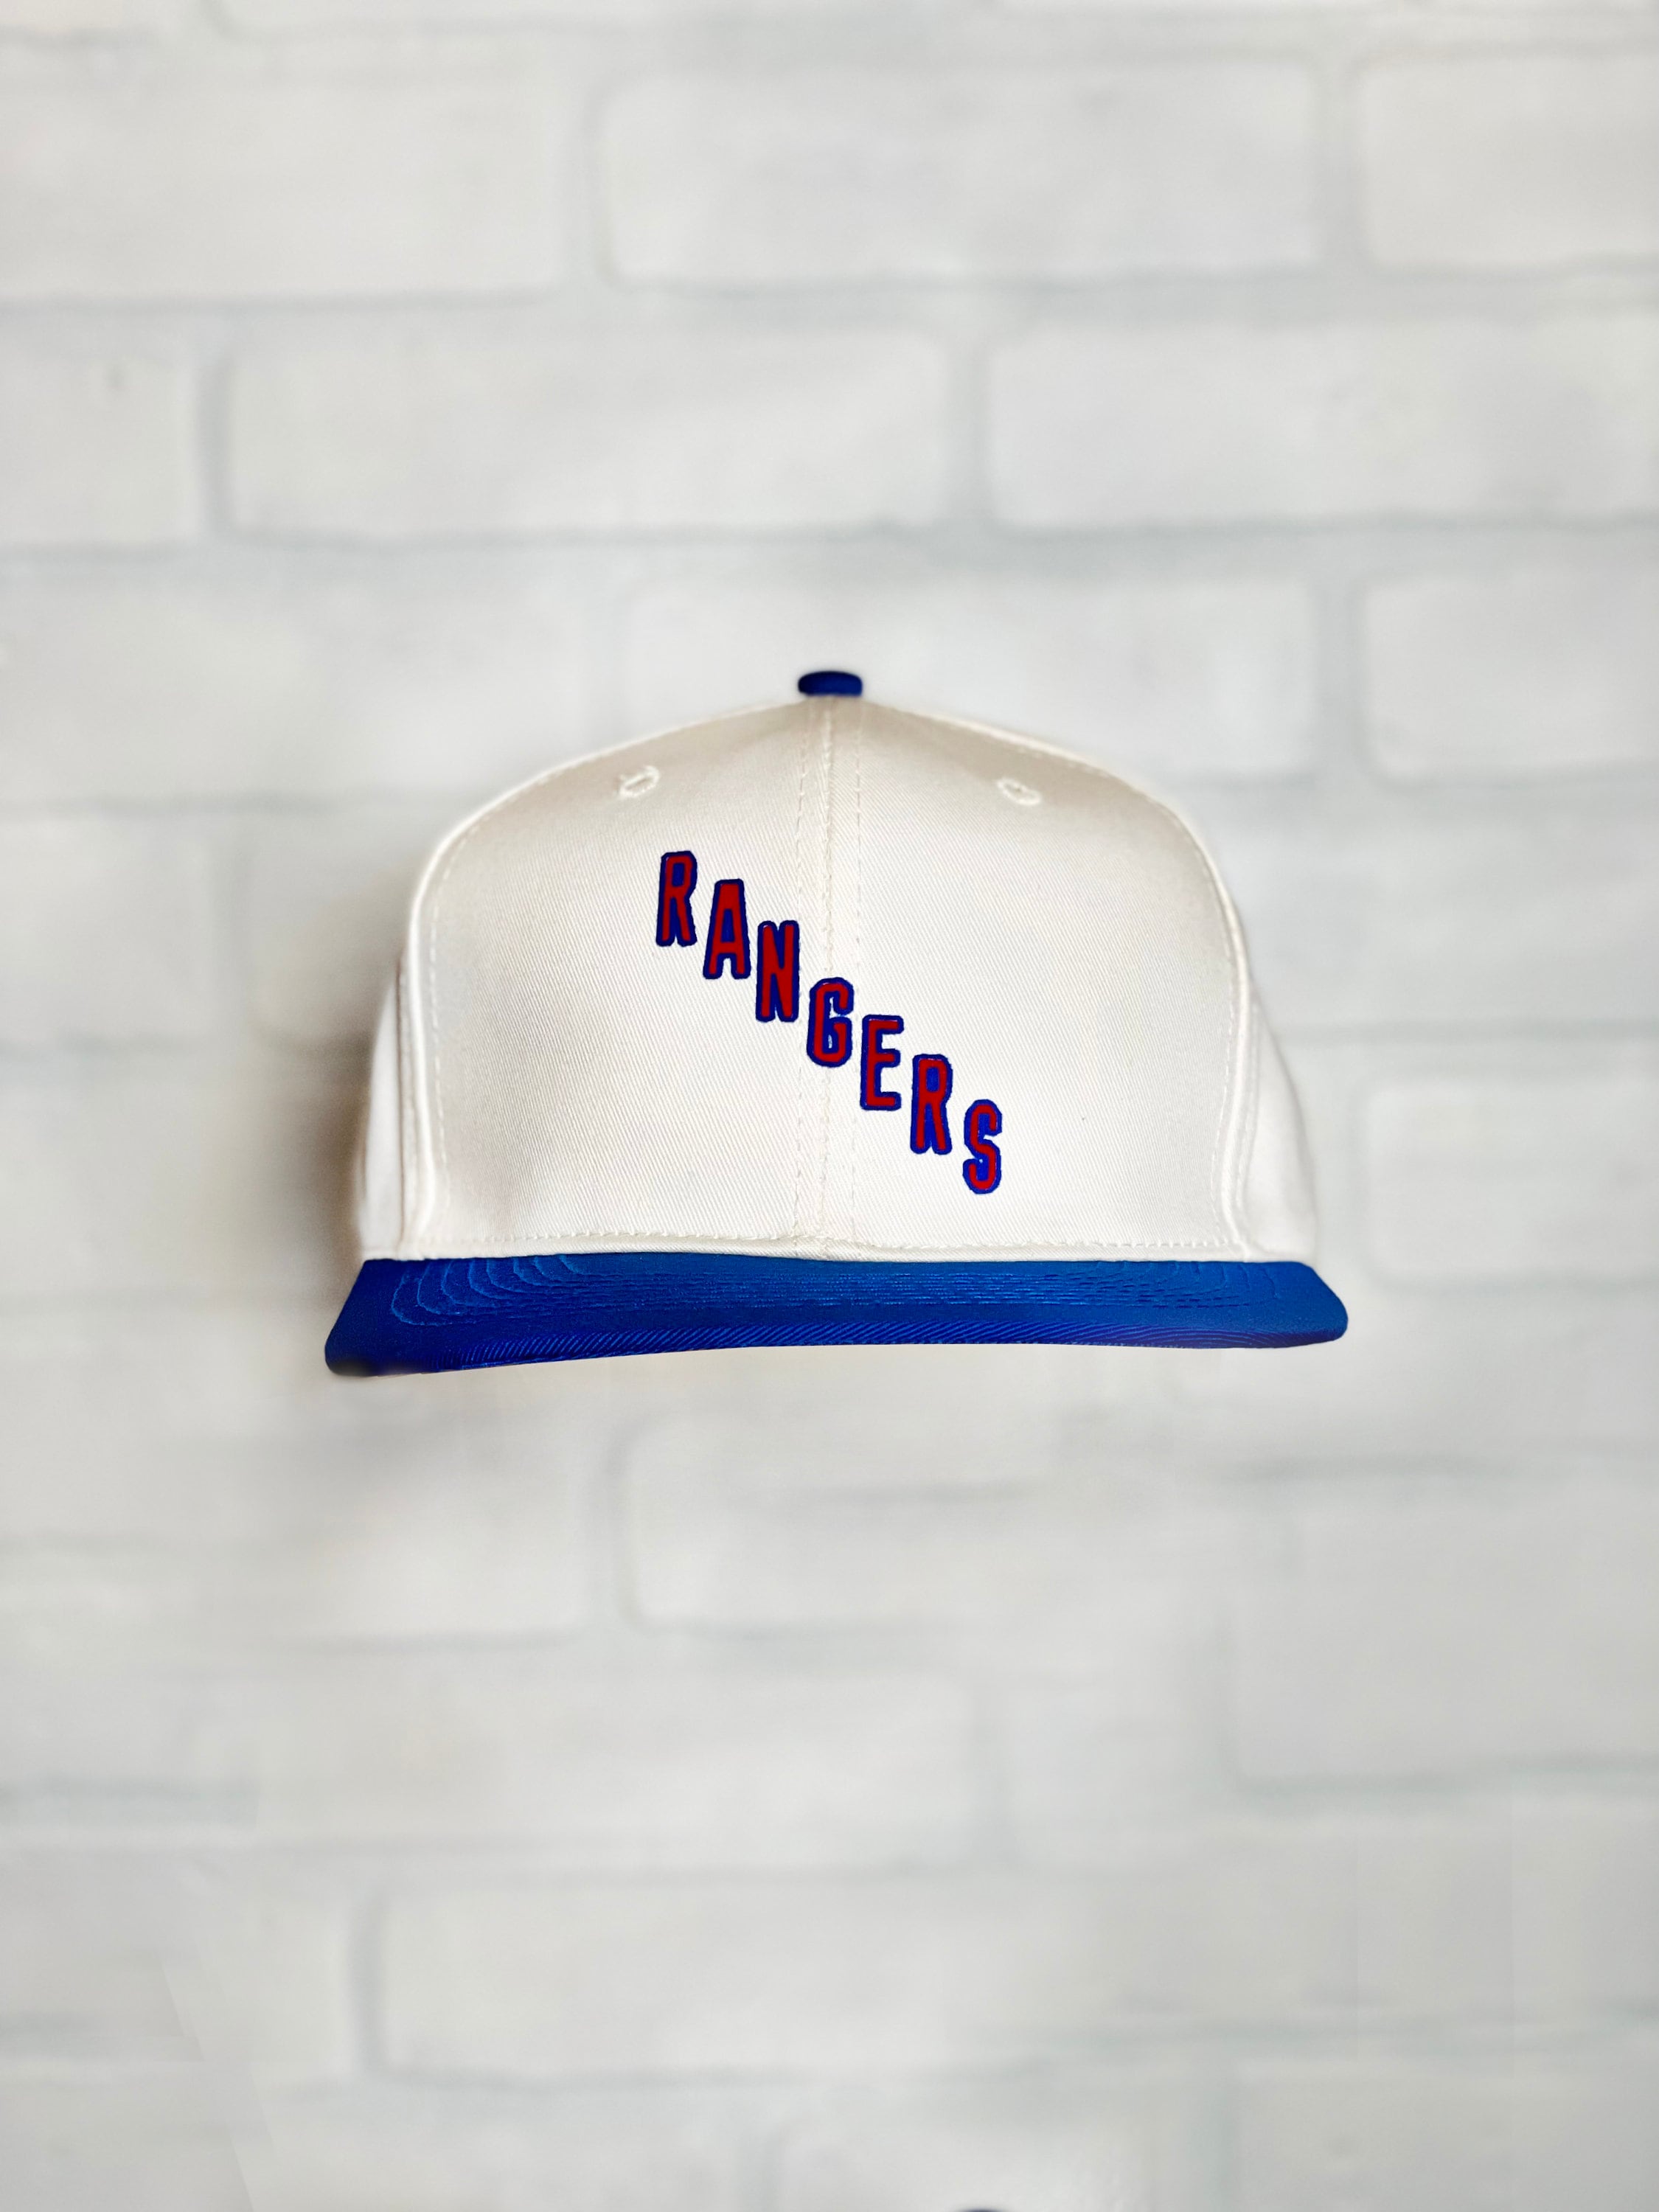 Vintage New York Rangers Lady Liberty CCM Snapback Hockey Hat